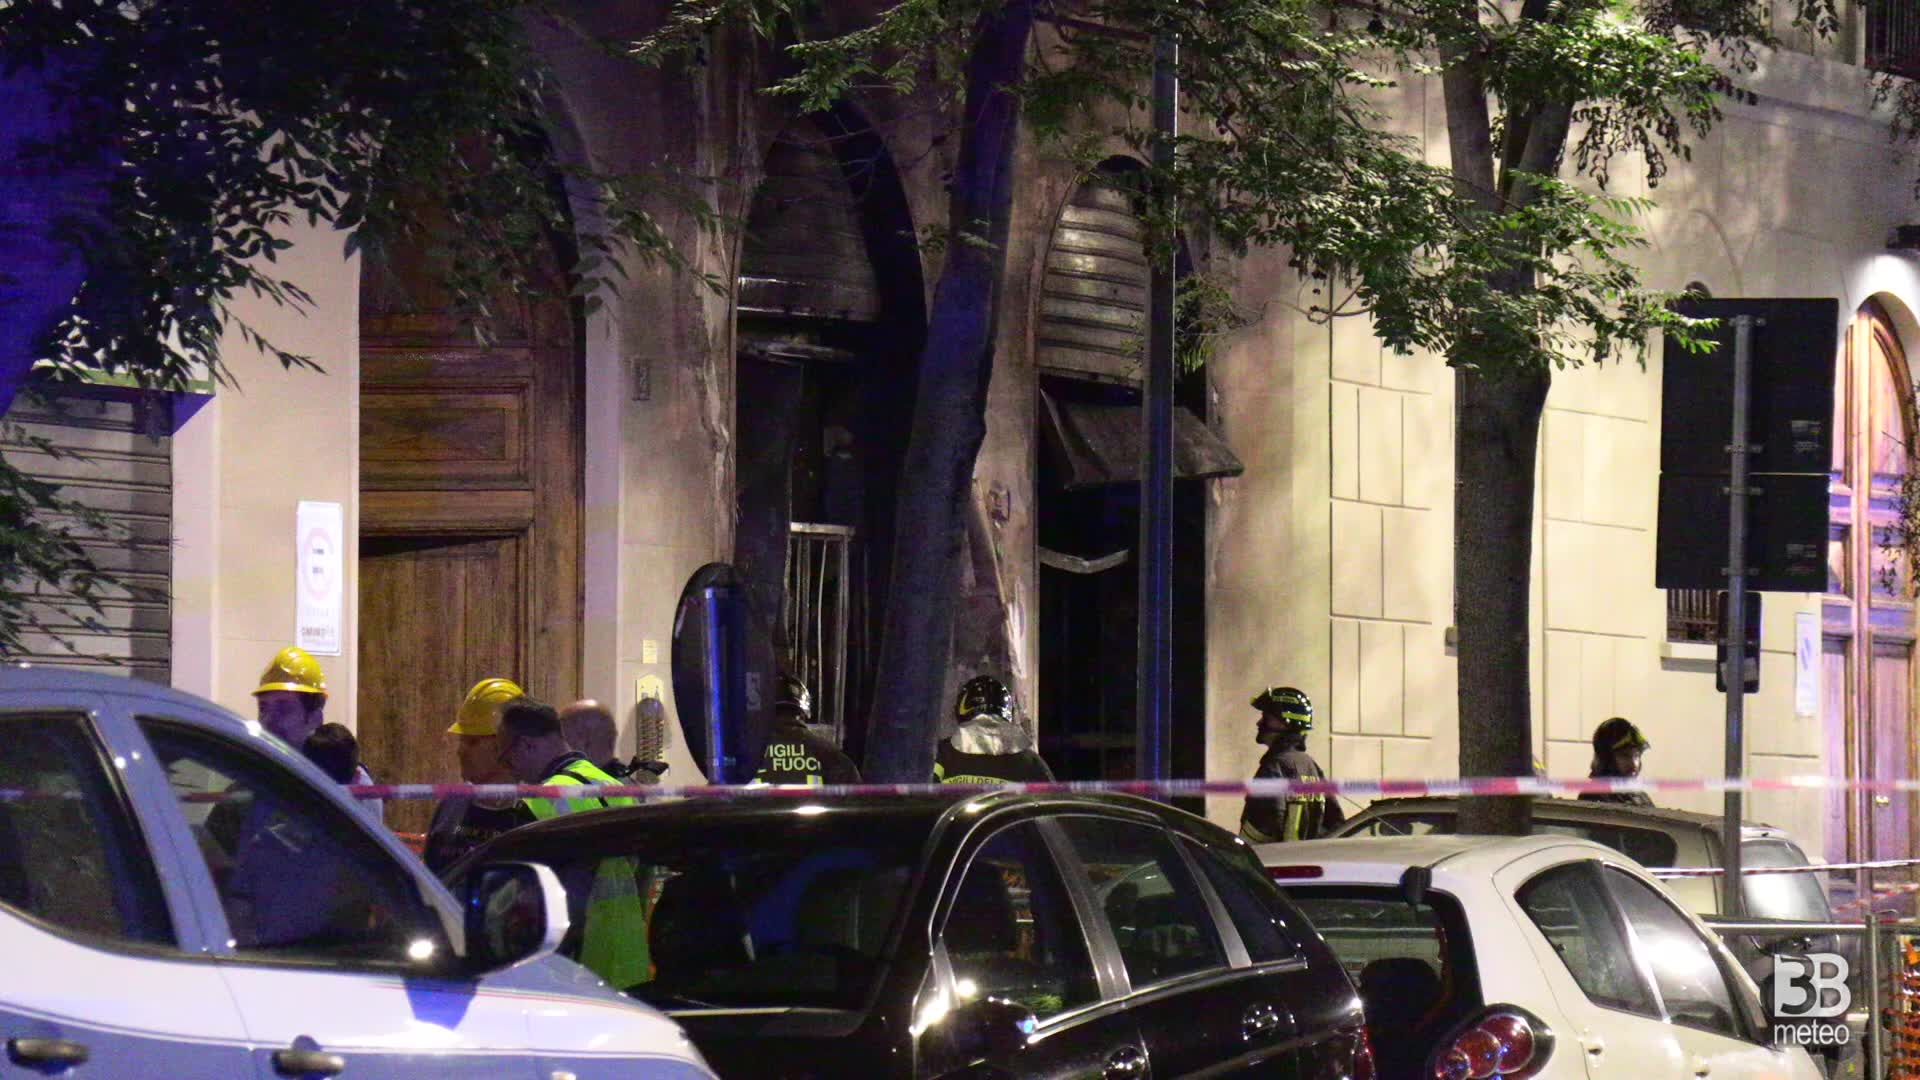 Incendio a Milano, 3 morti. L'esterno dell'officina andata a fuoco: 